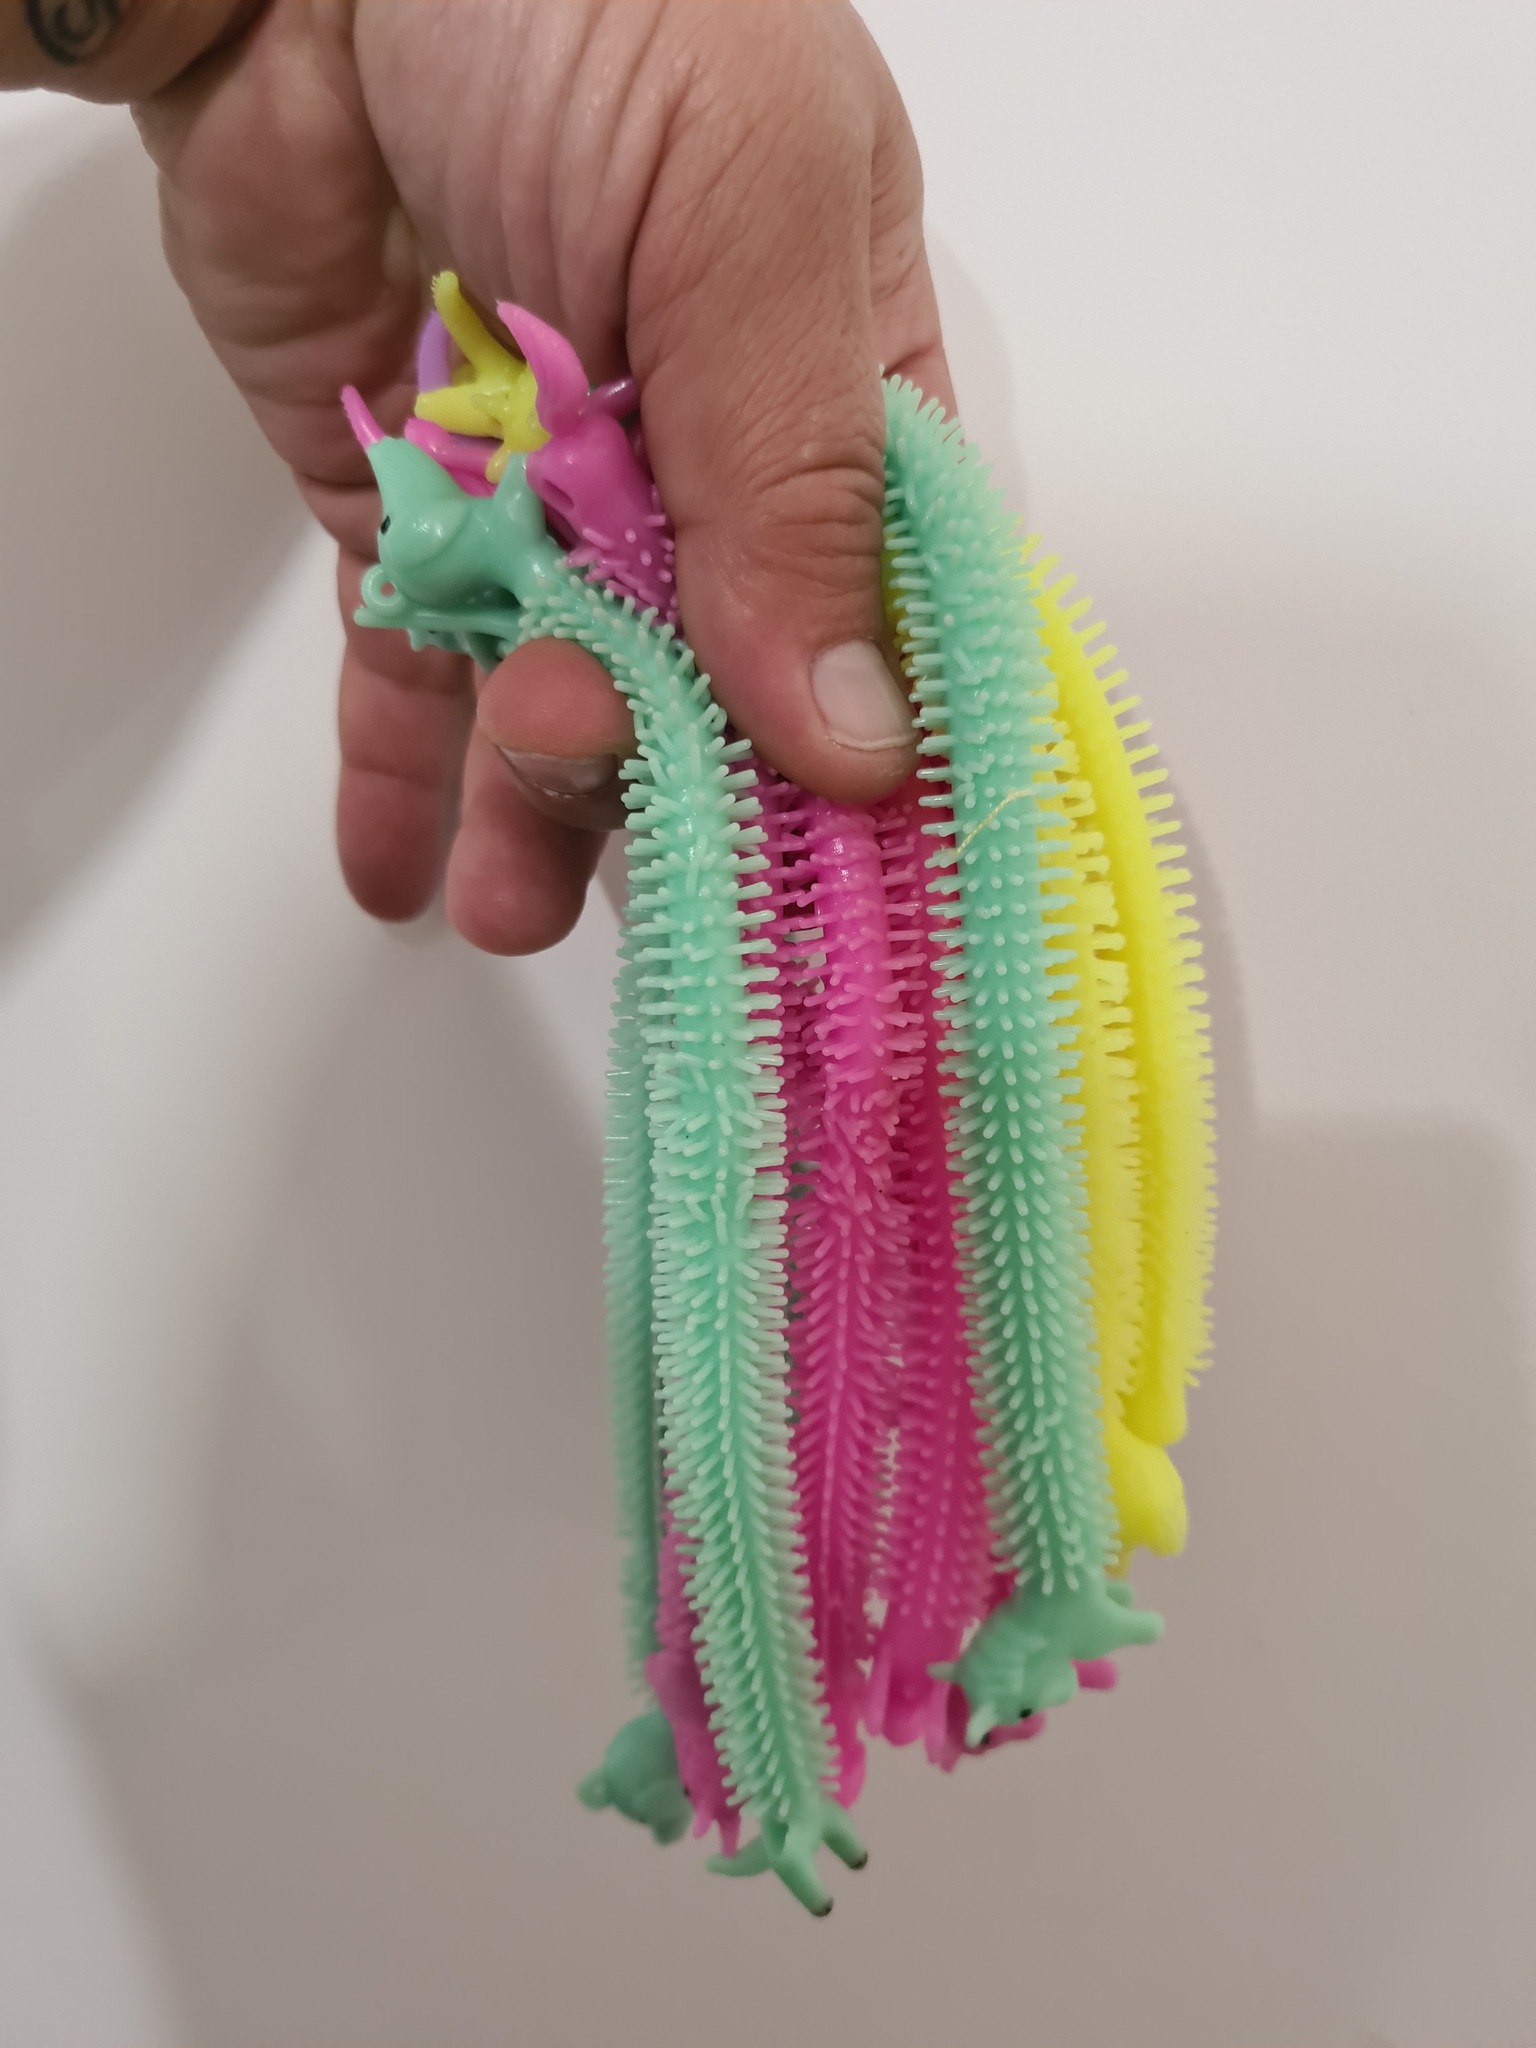 Magic fidget monkey noodle armband unicorn